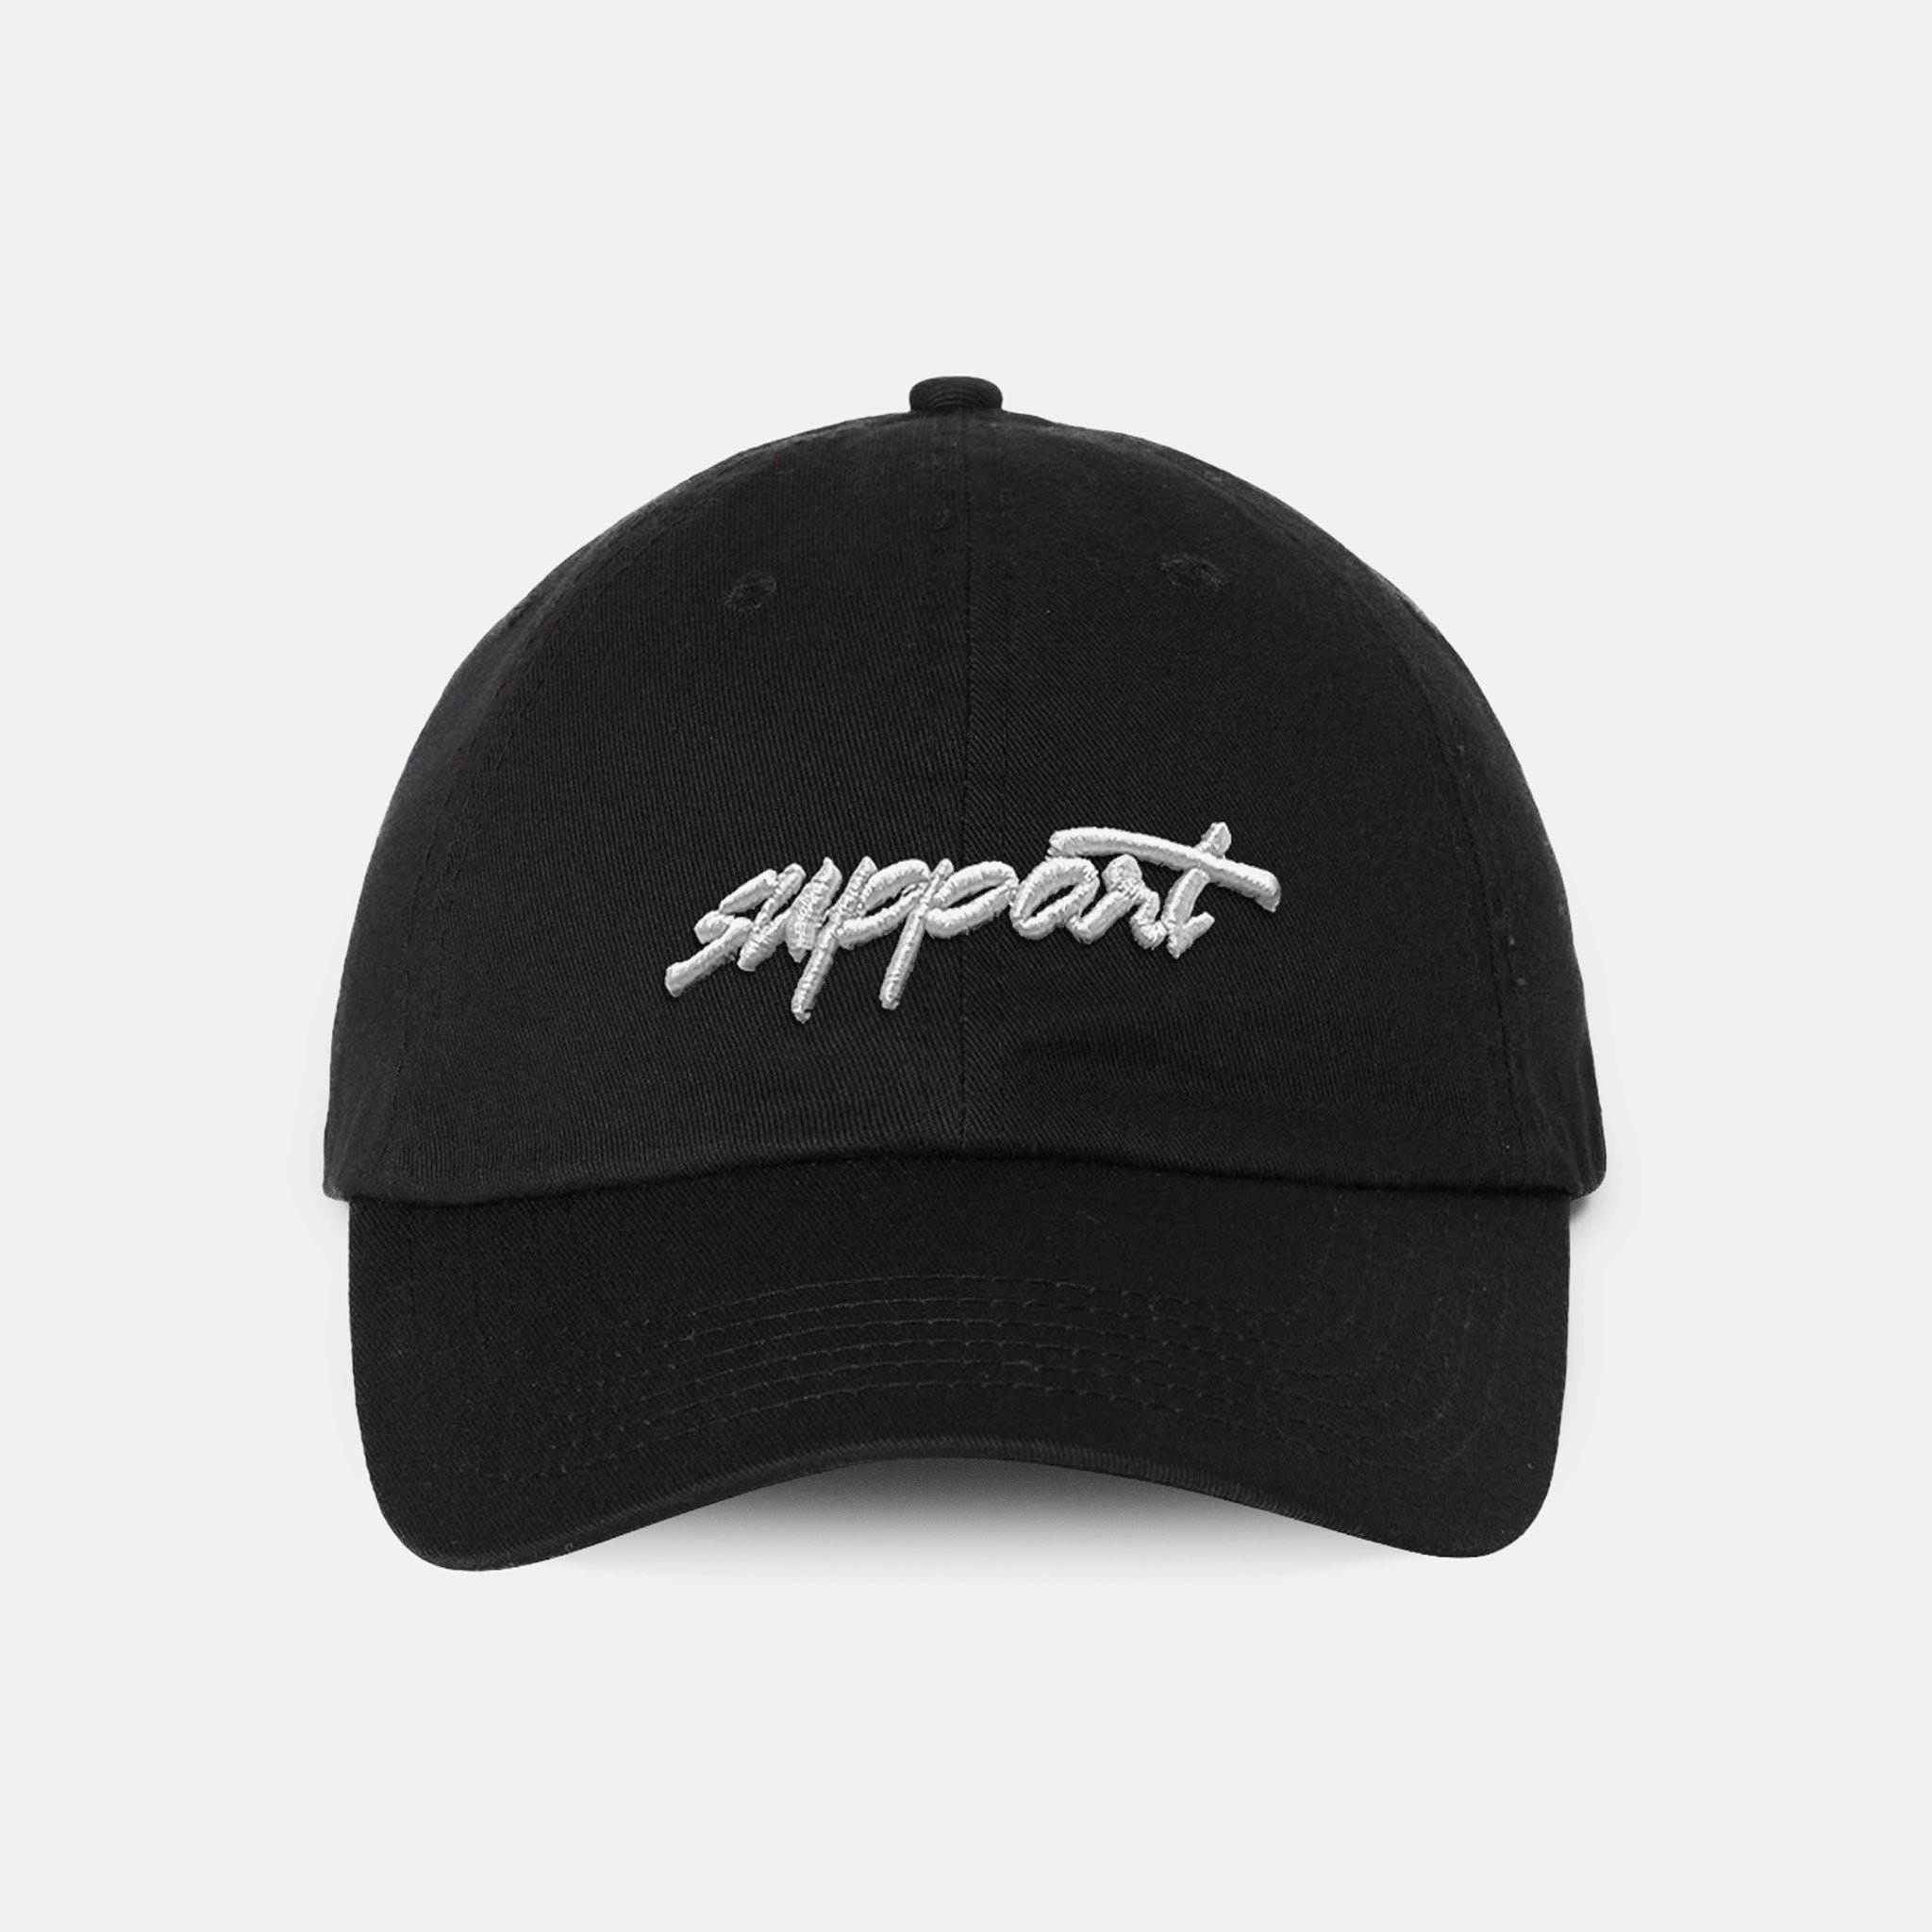 Support Hat – Haerfest Bags